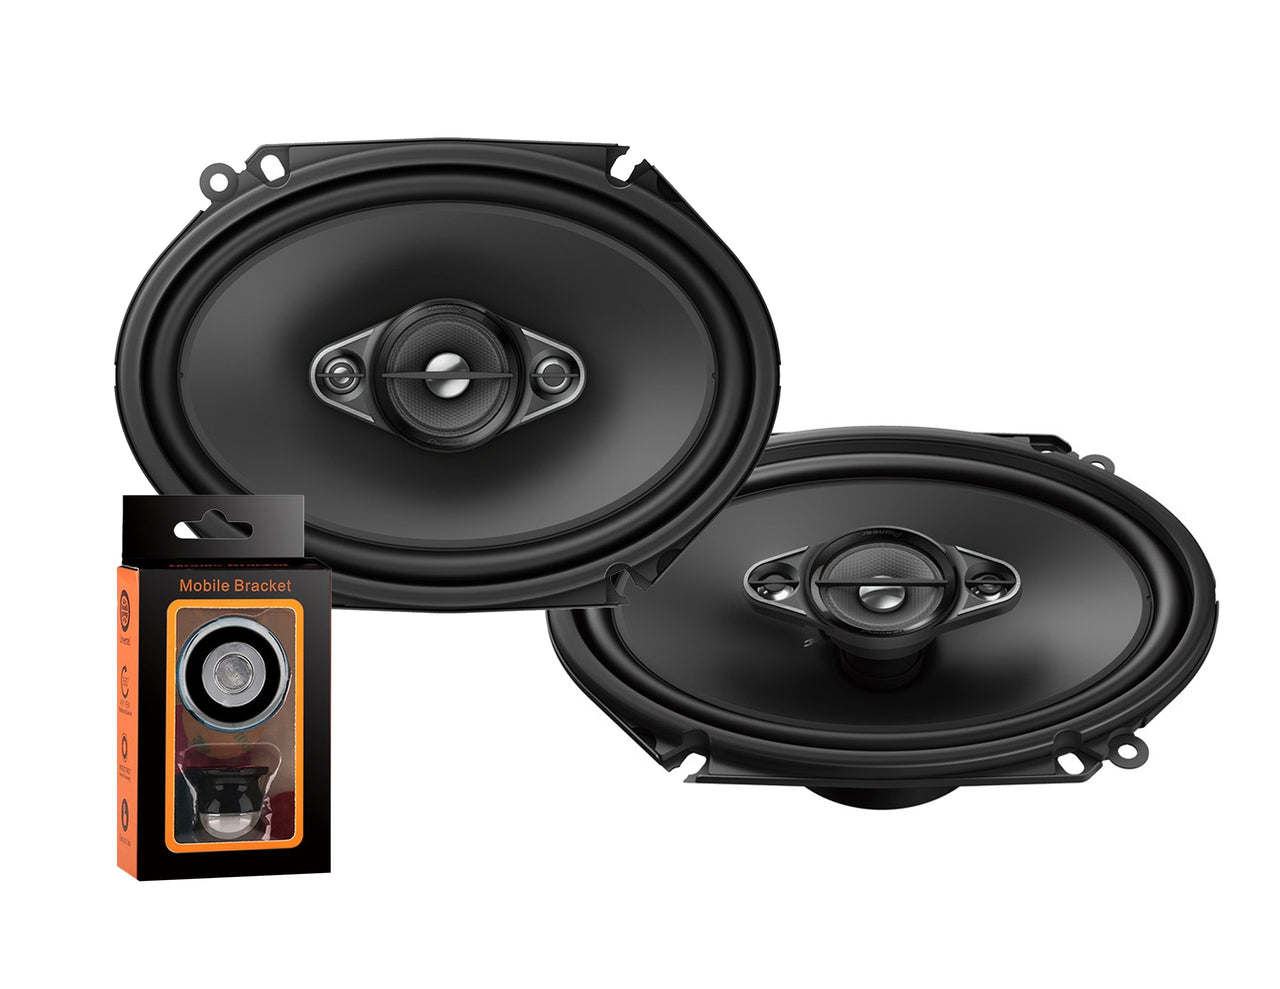 Pair of Pioneer 5x7/ 6x8 Inch 4-Way 350 Watt Car Audio Speakers | TS-A6880F (2 Speakers) + Free Absolute Mobile Bracket Holder